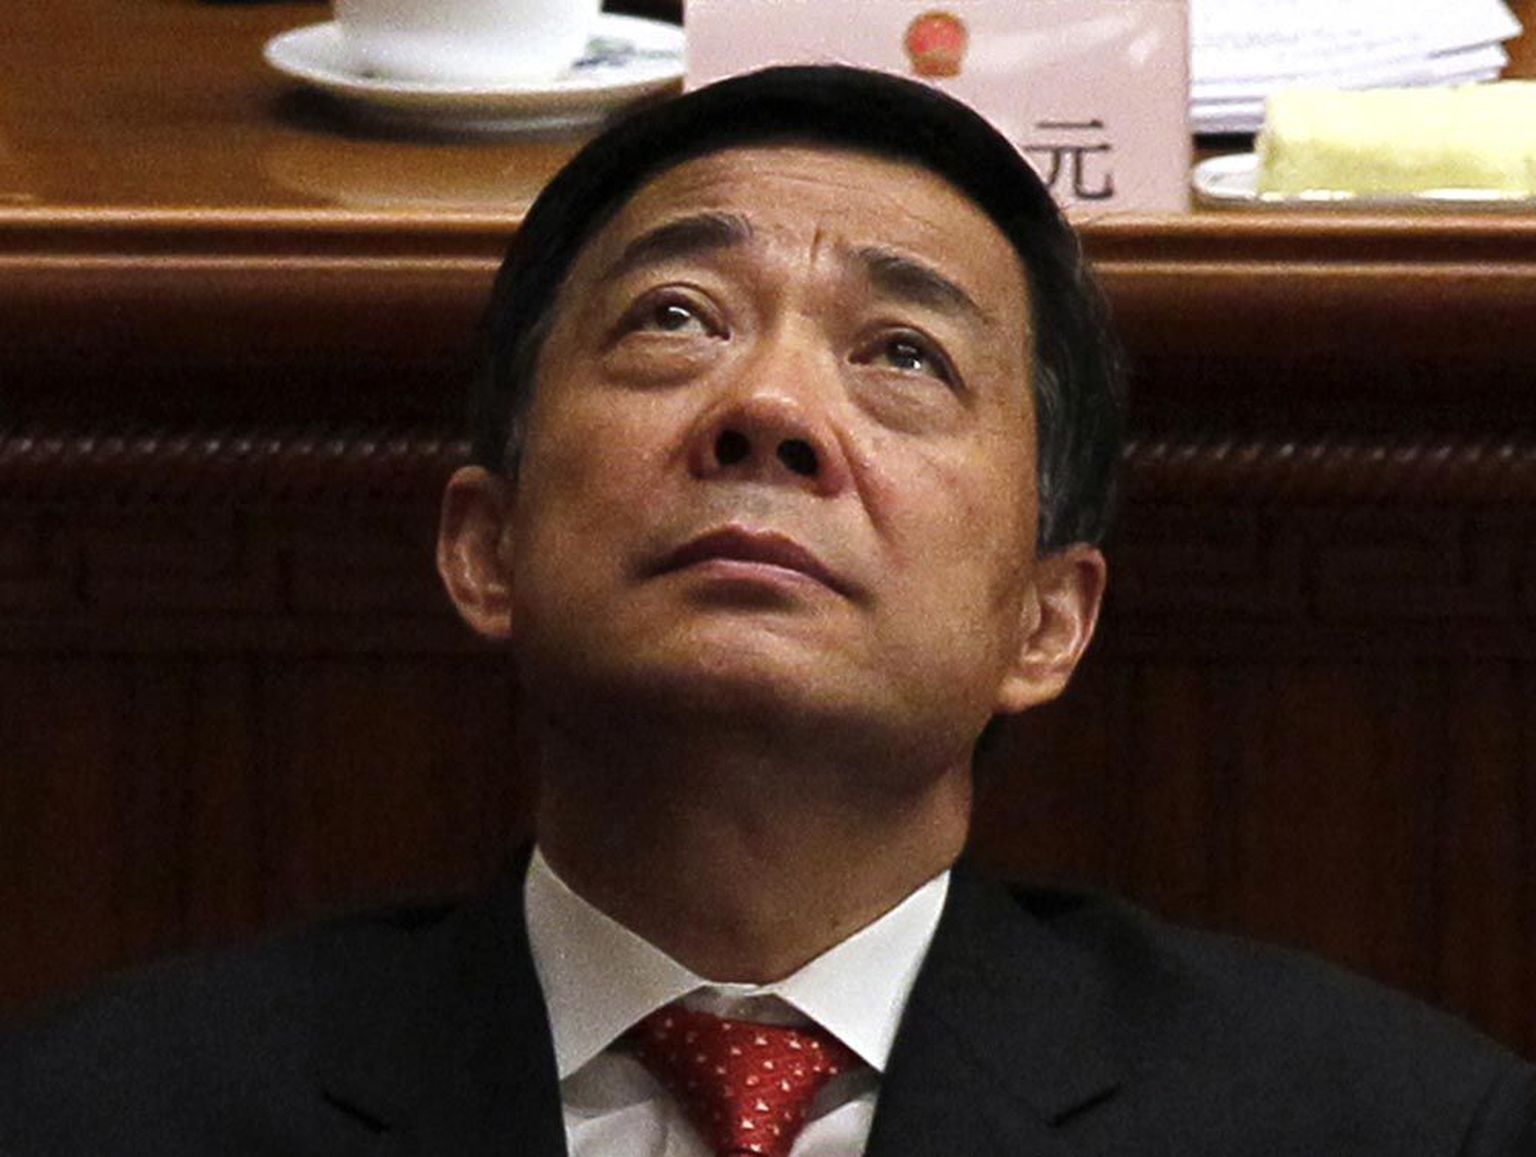 «Hiina Chicagoks» kutsutud Chongqingi linnas korra majja löönud parteisekretär Bo Xilai oli populist, kes vaeste inimeste vajadusi rahuldades endale toetust kogus, kuid selle varjus oma politseiriiki üles ehitas. Keskvalitsuse jaoks oli säärane isetegevus lubamatu.